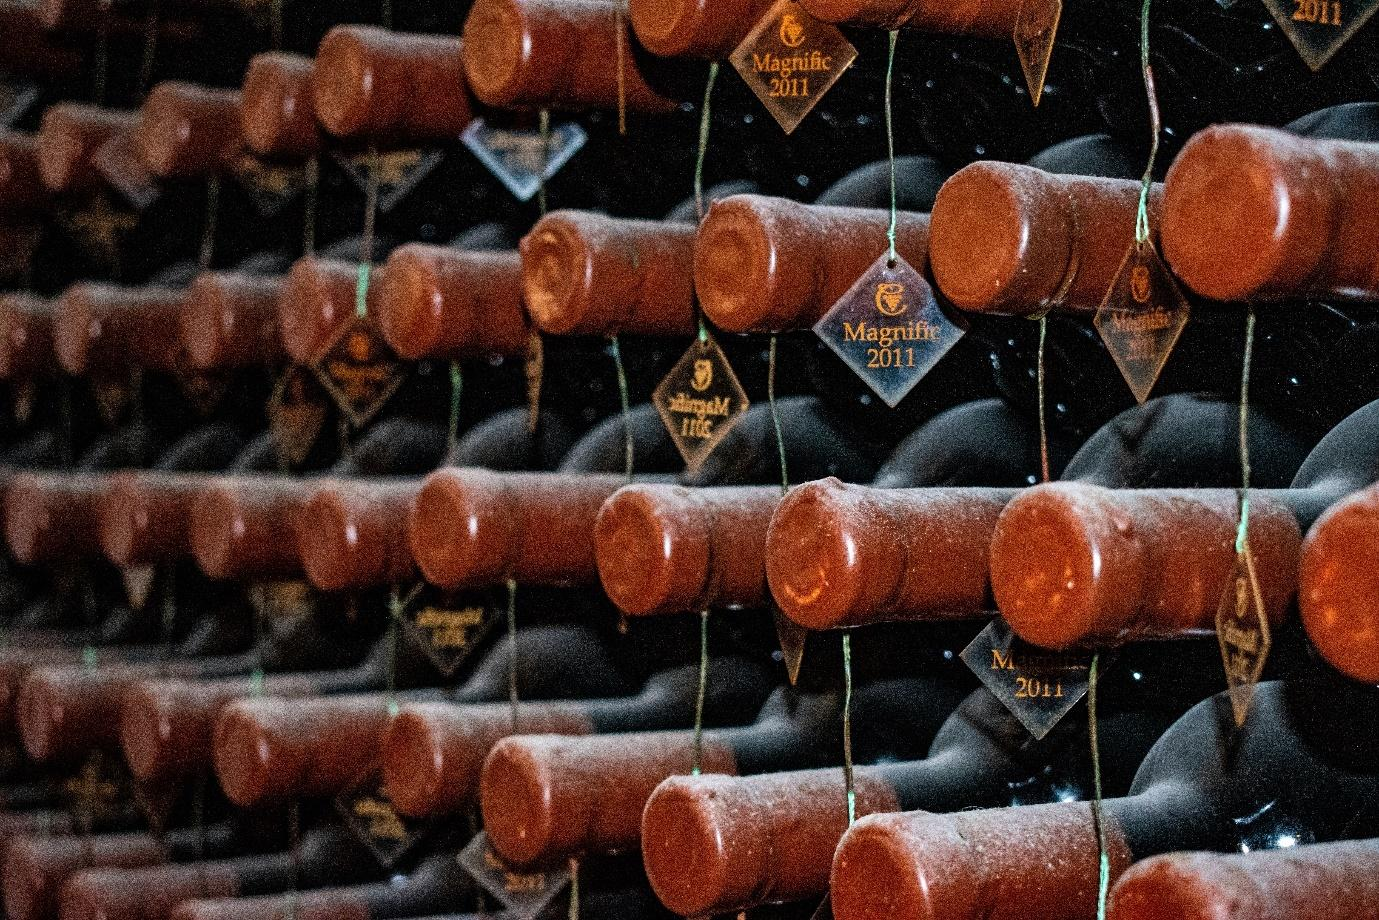 Stacks of Wine bottle